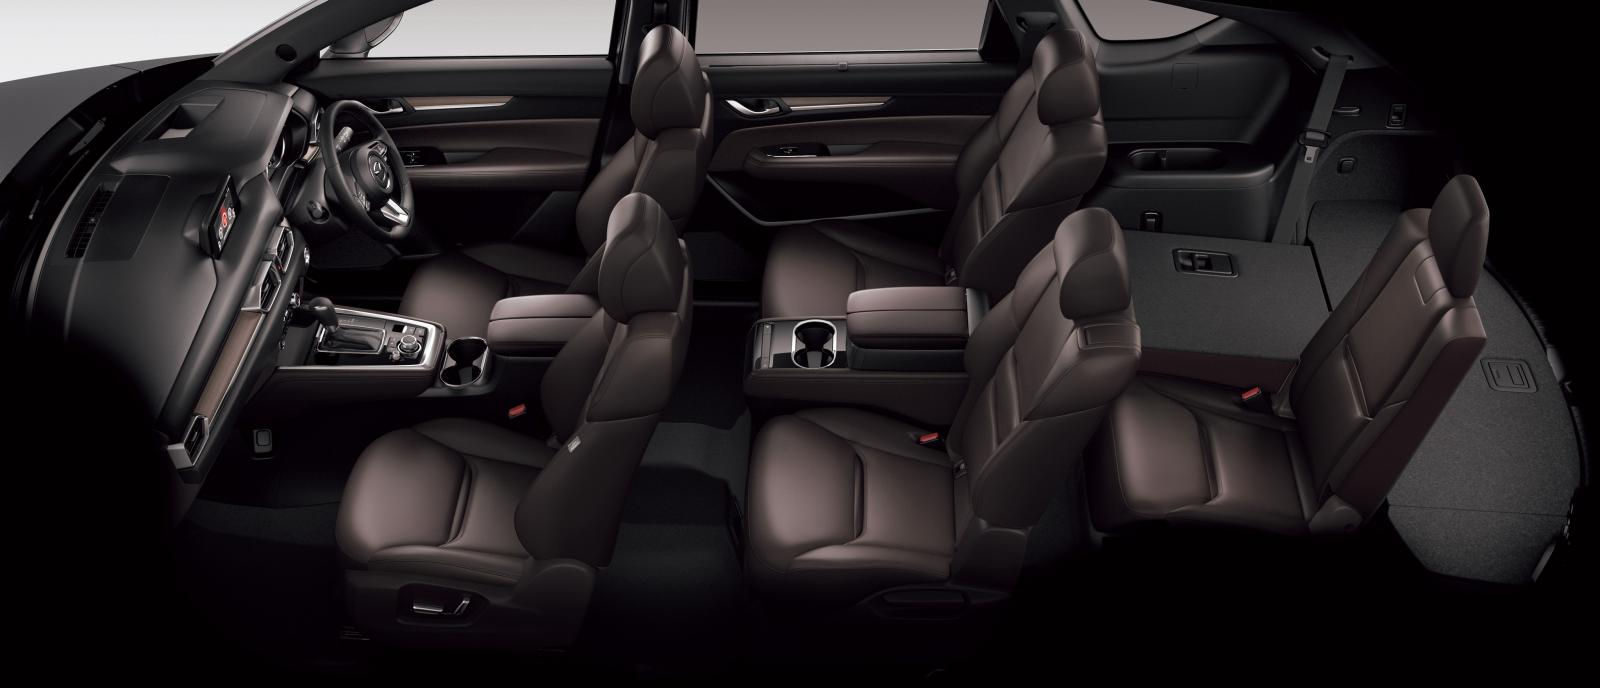  Với chiều dài cơ sở đứng đầu phân khúc SUV 7 chỗ, Mazda CX-8 hứa hẹn mang đến một không gian nội thất rộng rãi và thoải mái.